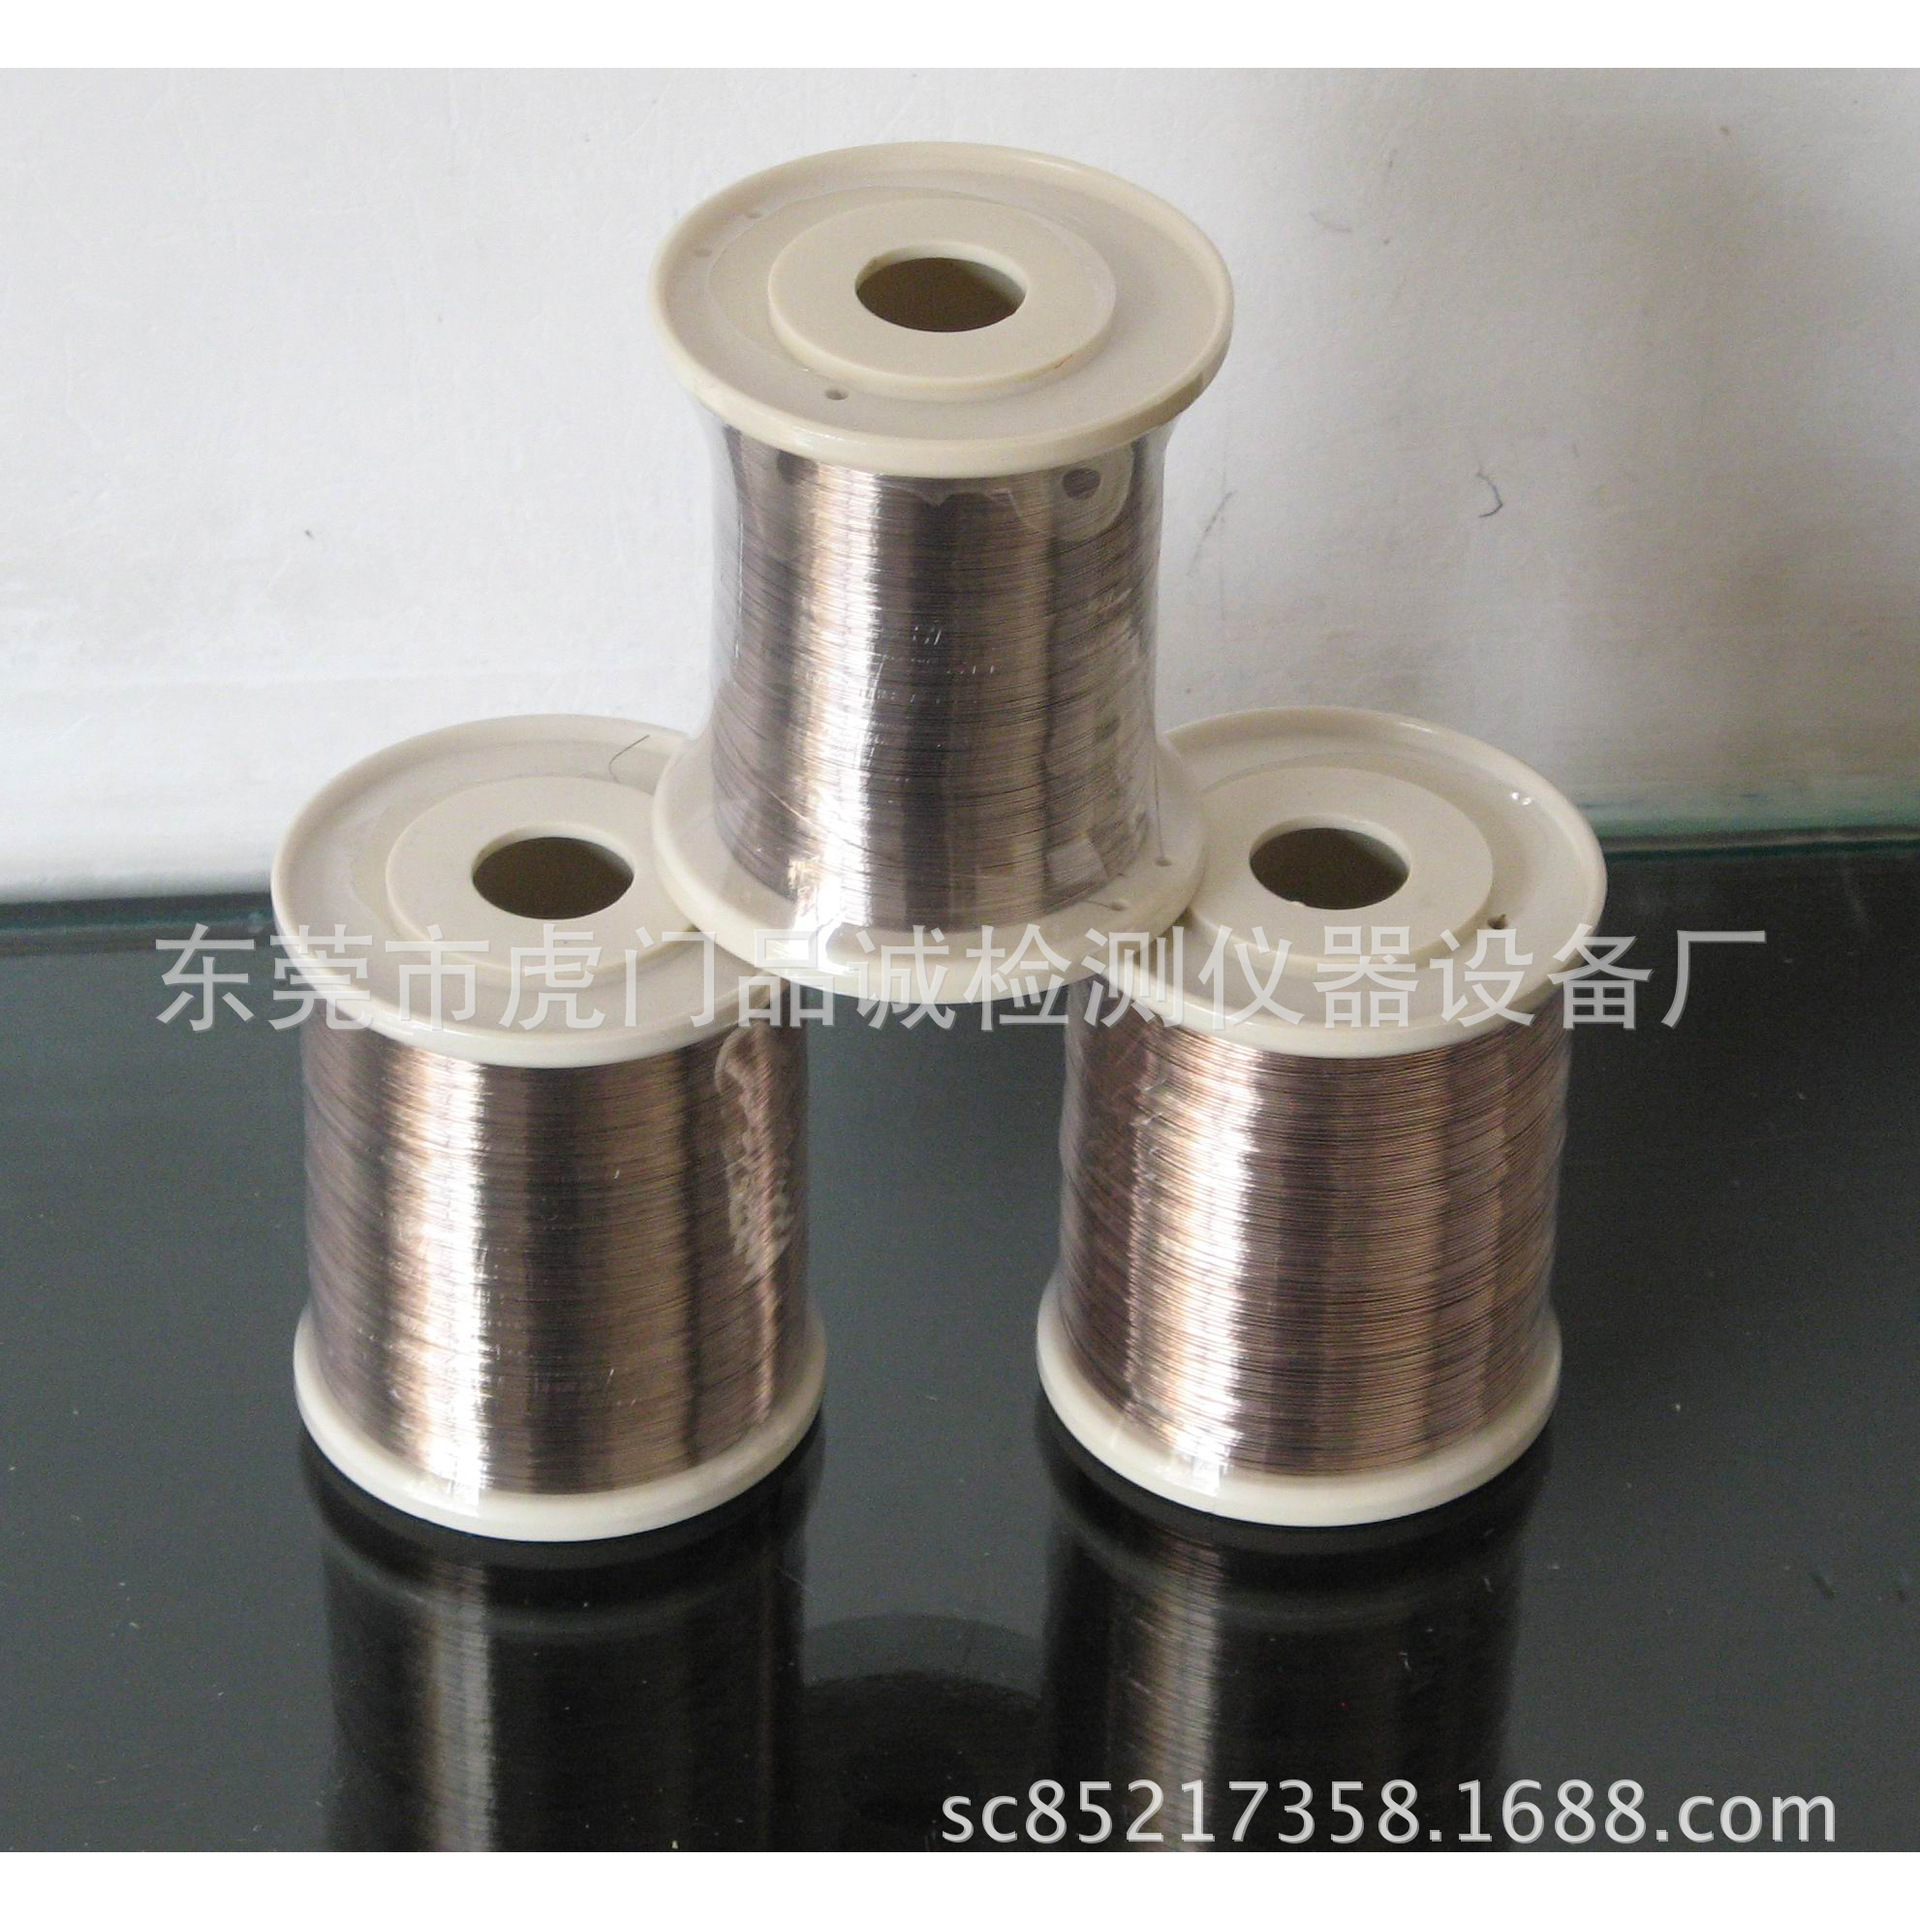 东莞银焊丝 0.2MM银焊丝 银丝 铜线专用银焊丝 0.5mm银焊丝示例图3